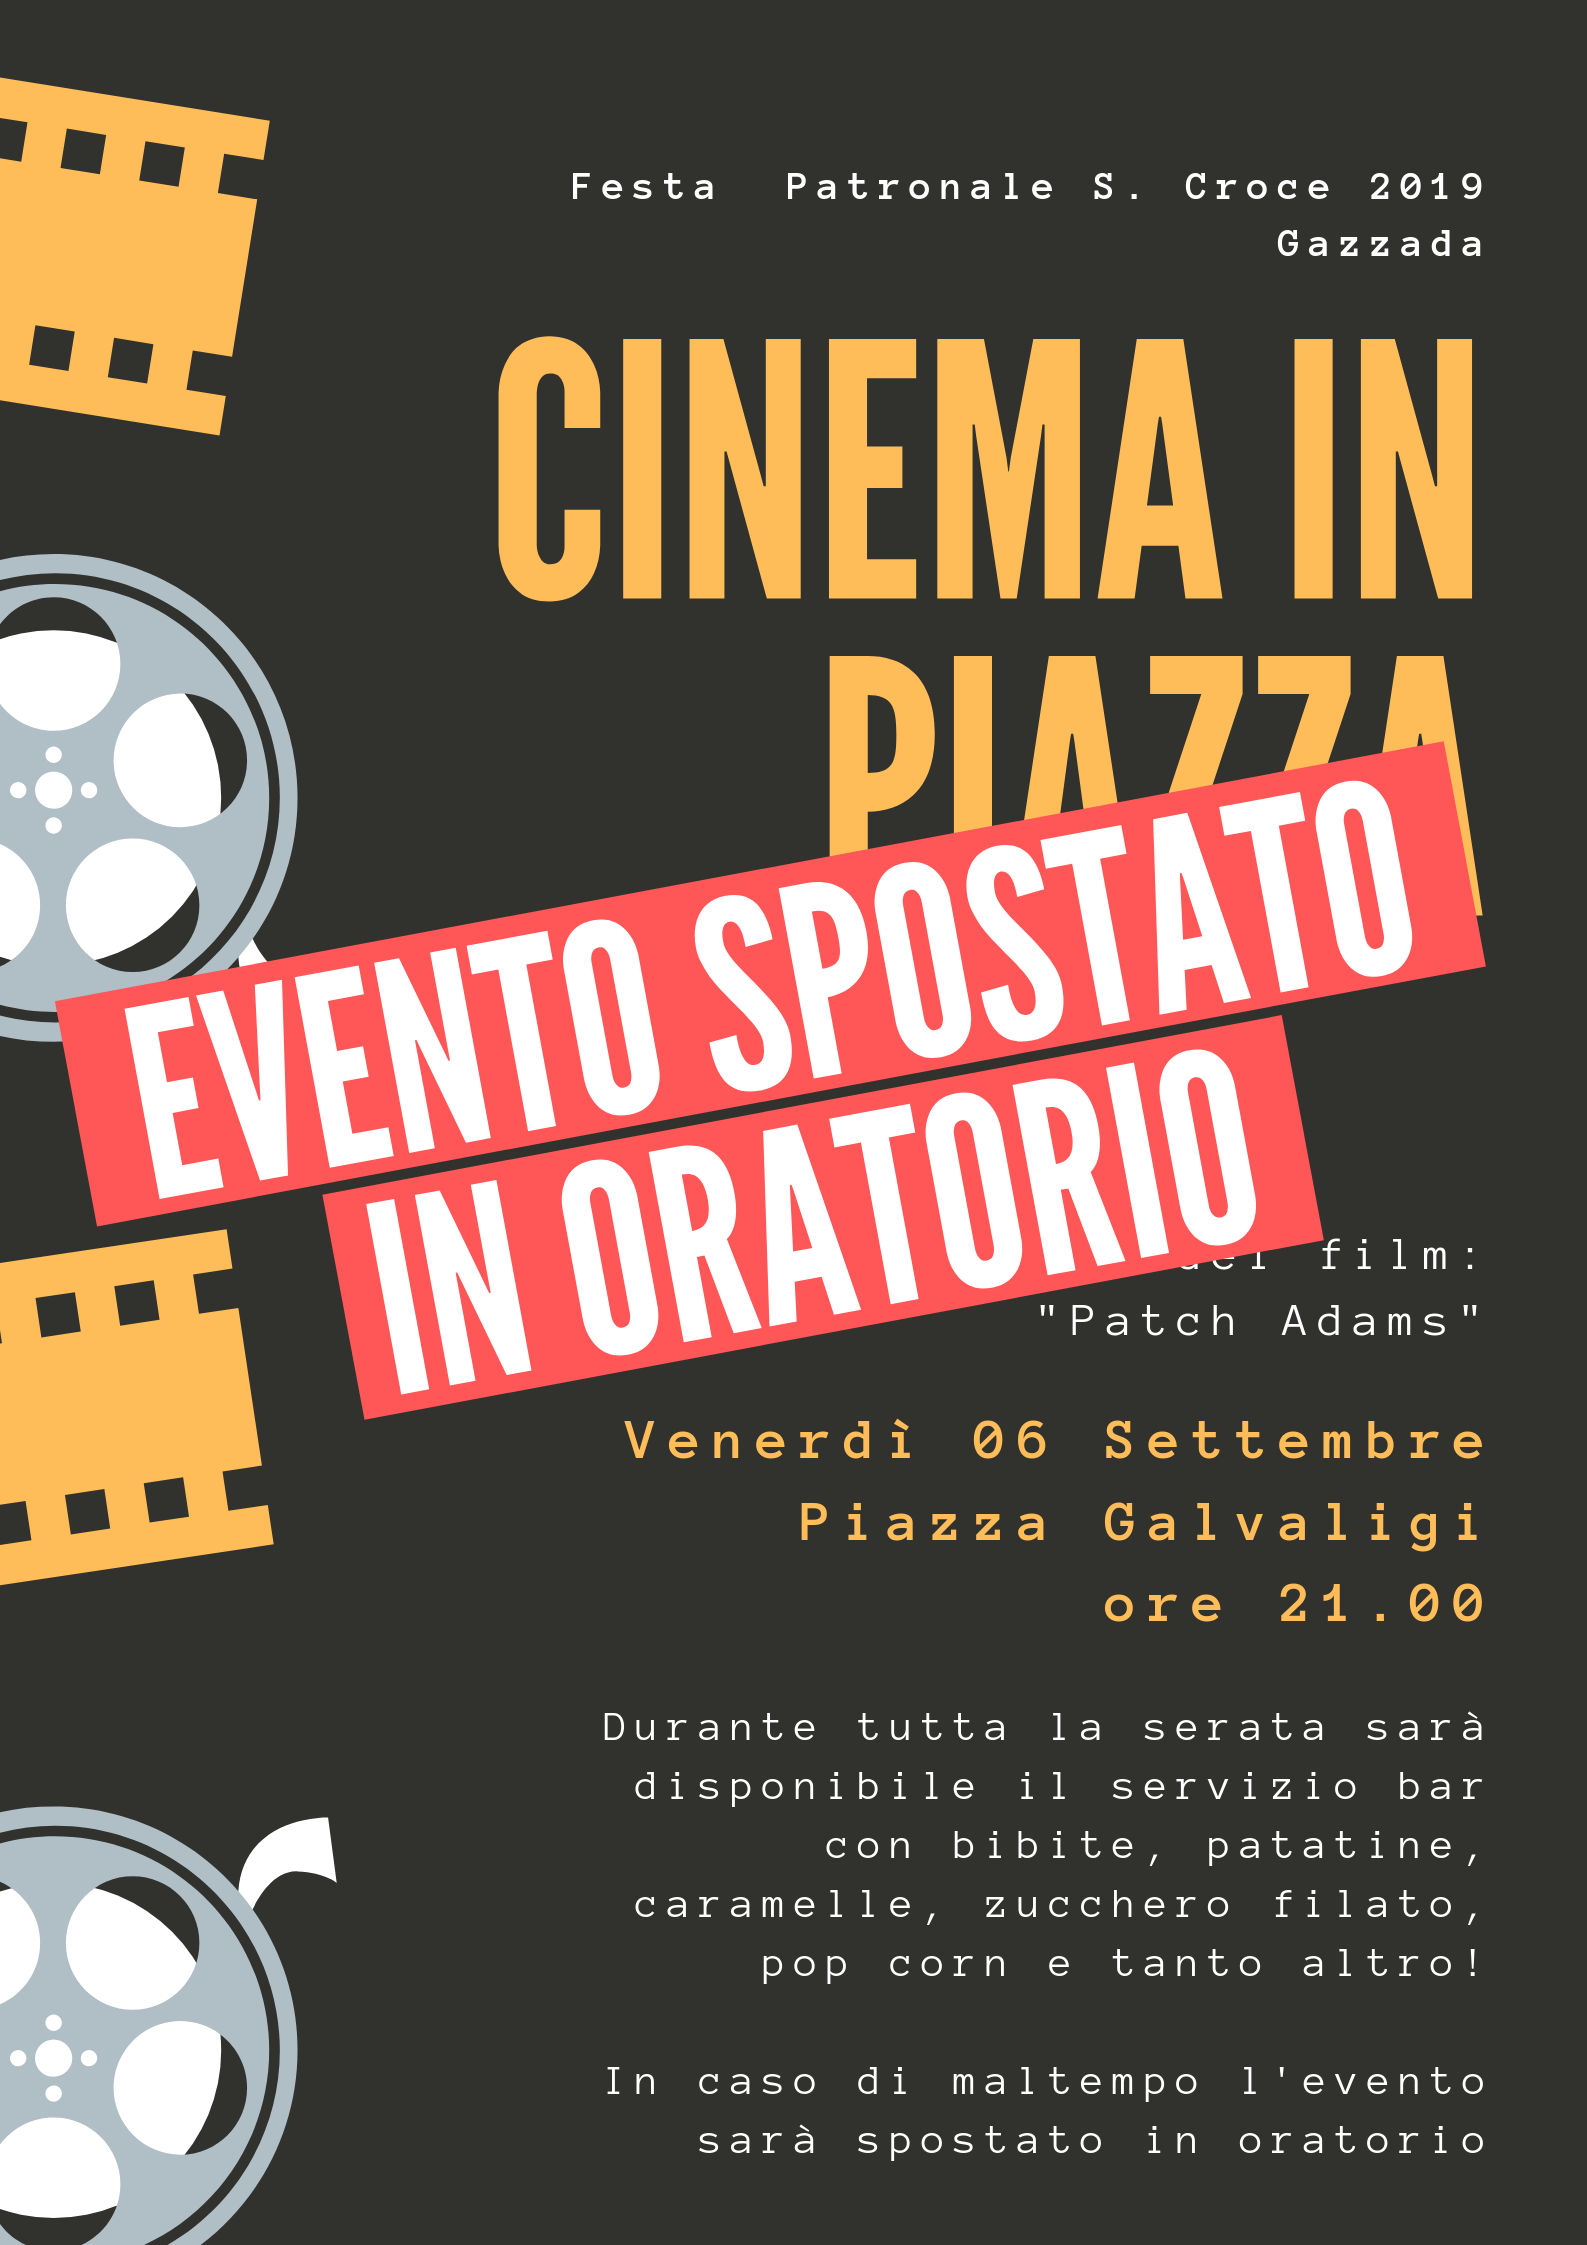 Festa Patronale 2019 Cinema in piazza EVENTO SPOSTATO